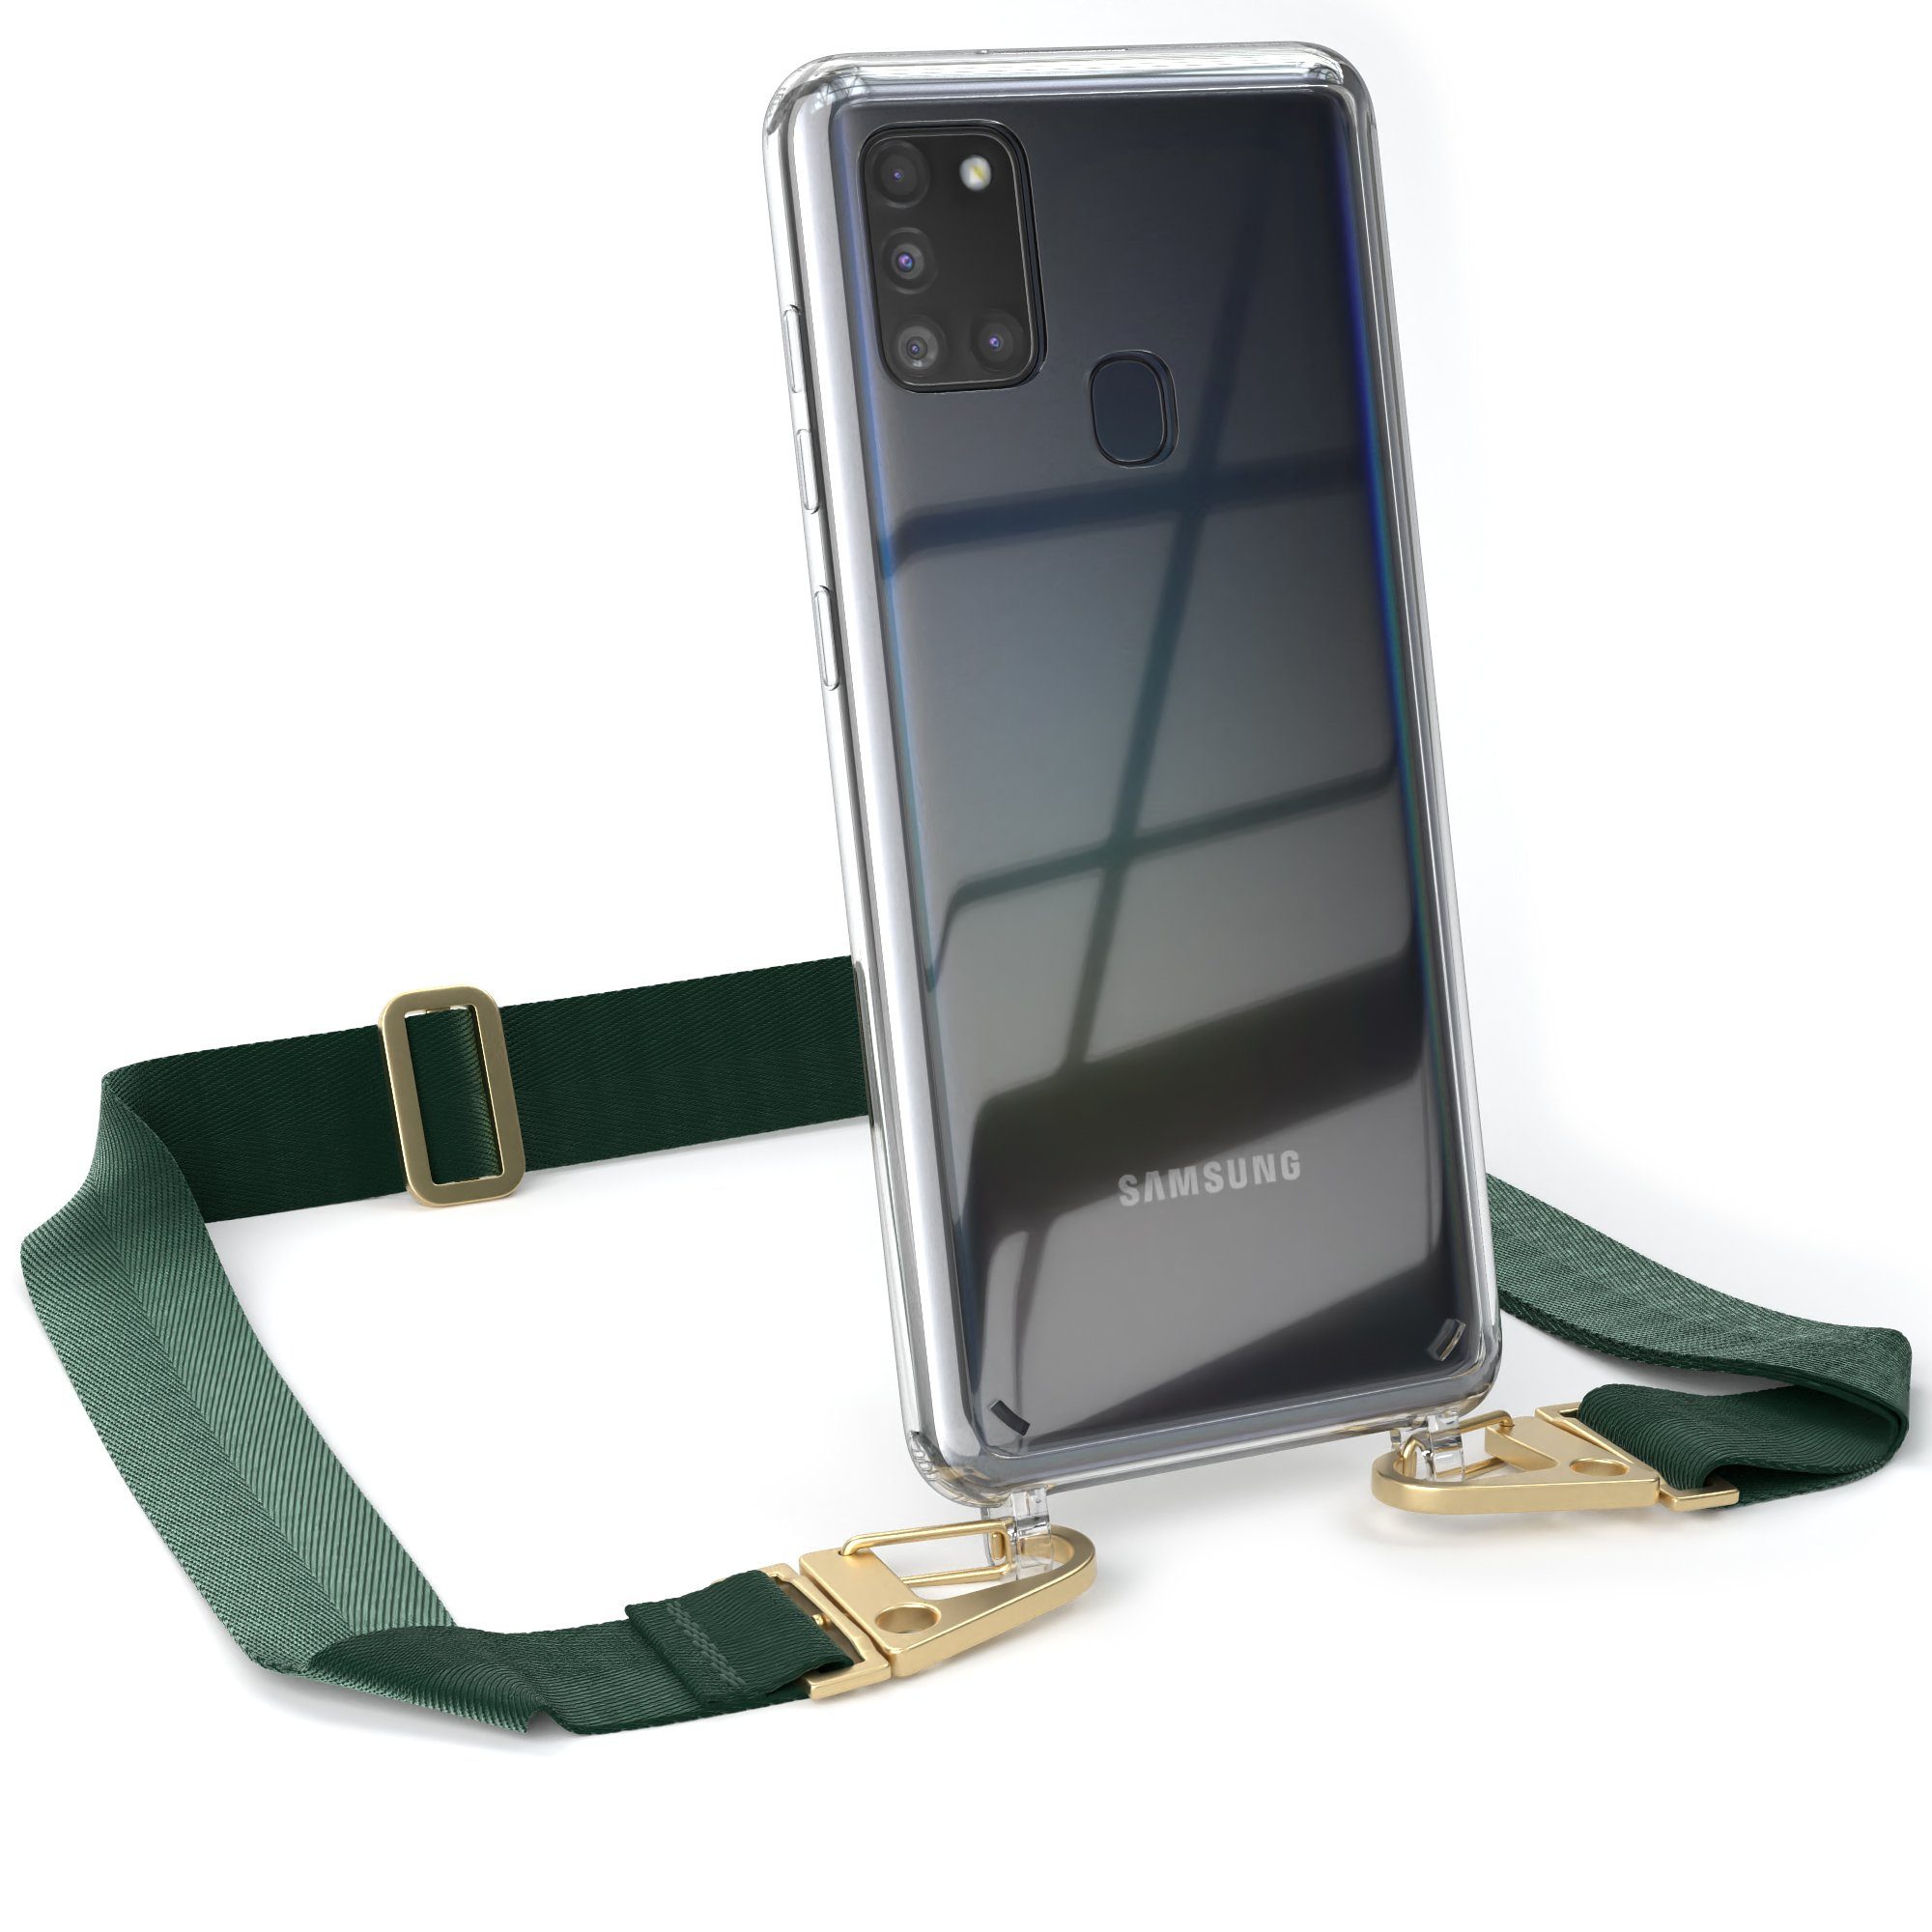 EAZY CASE Handykette Silikon Kette Karabiner für Samsung Galaxy A21s 6,5 Zoll, Handytasche durchsichtige Silikon Hülle mit breitem Umhängeband Grün